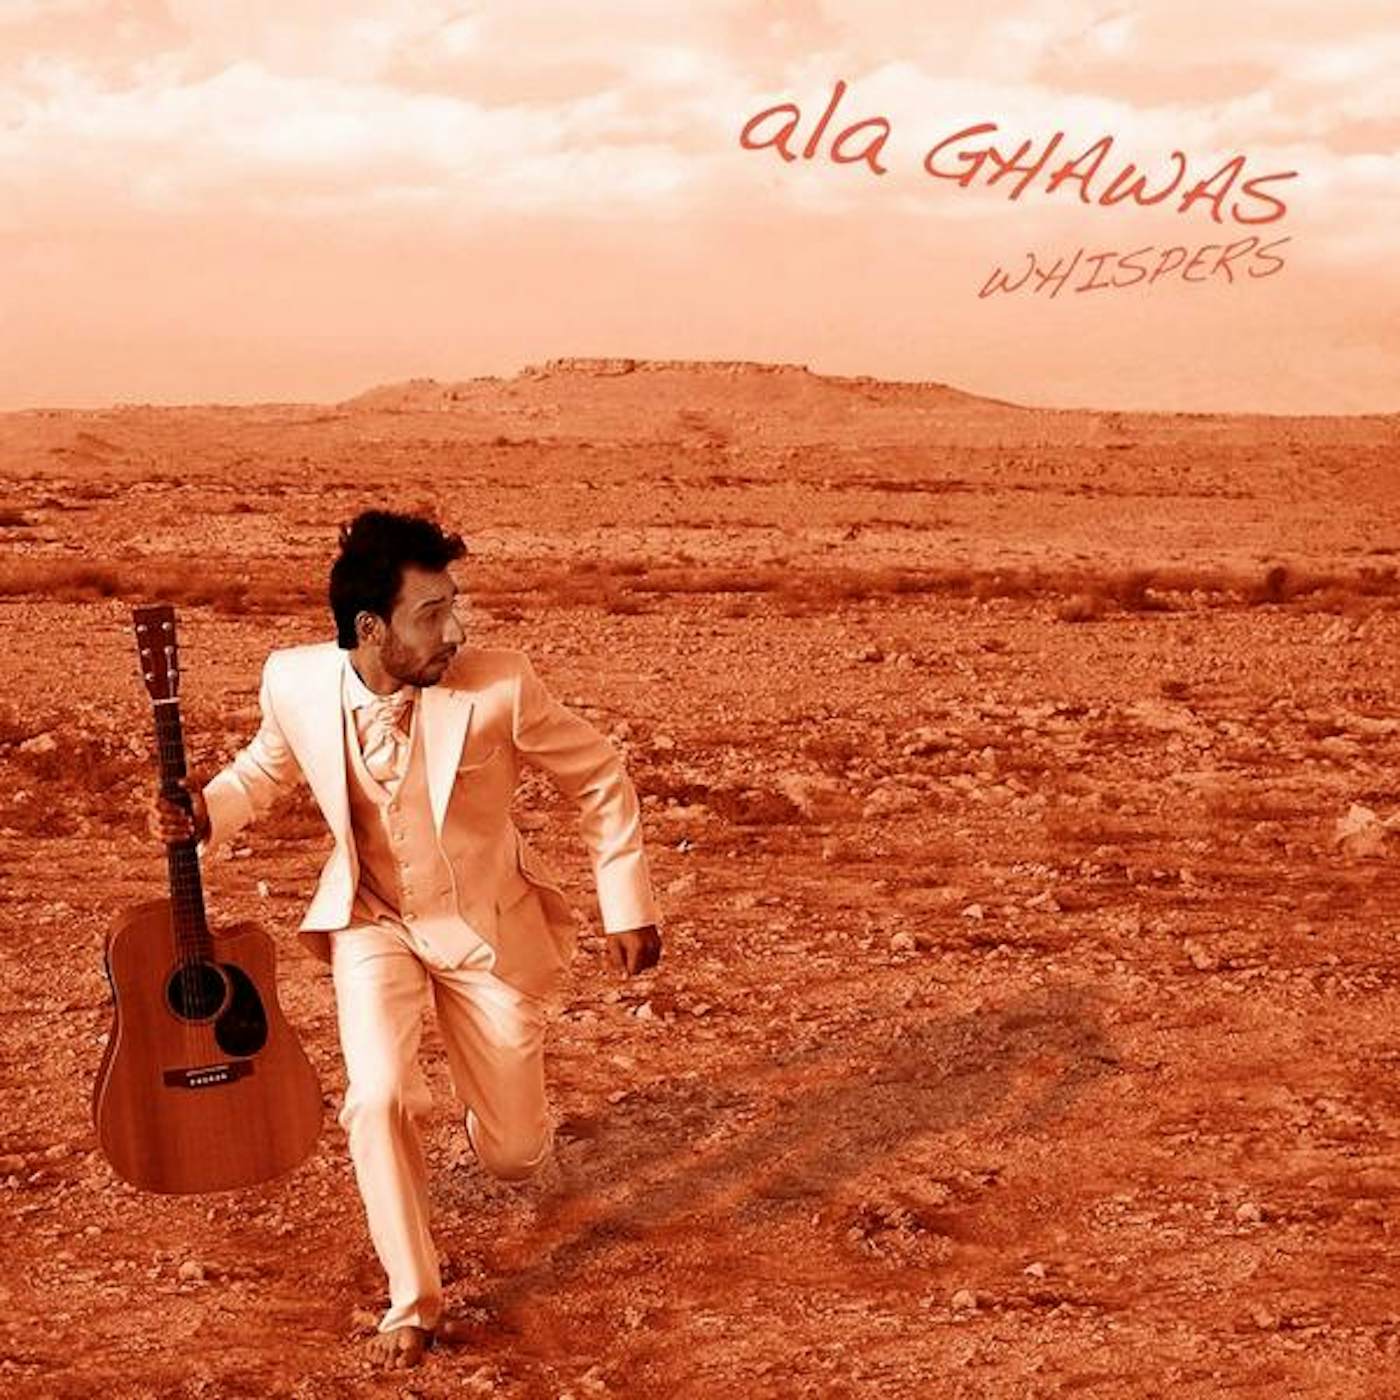 Ala Ghawas WHISPERS CD